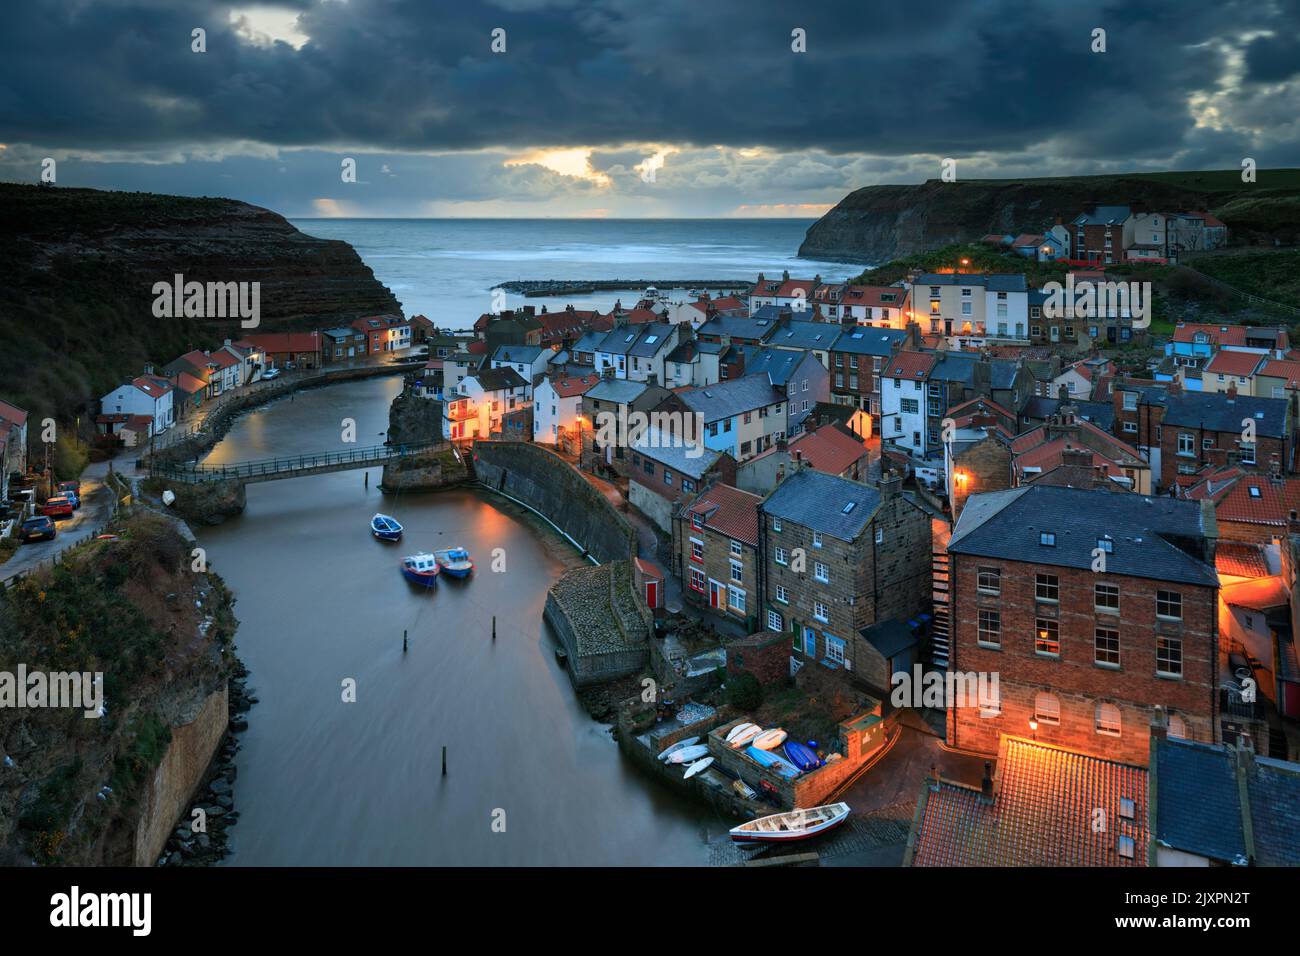 Le village pittoresque de Staithes, sur la côte du Yorkshire du Nord, a été capturé avant le lever du soleil le matin d'une tempête. Banque D'Images